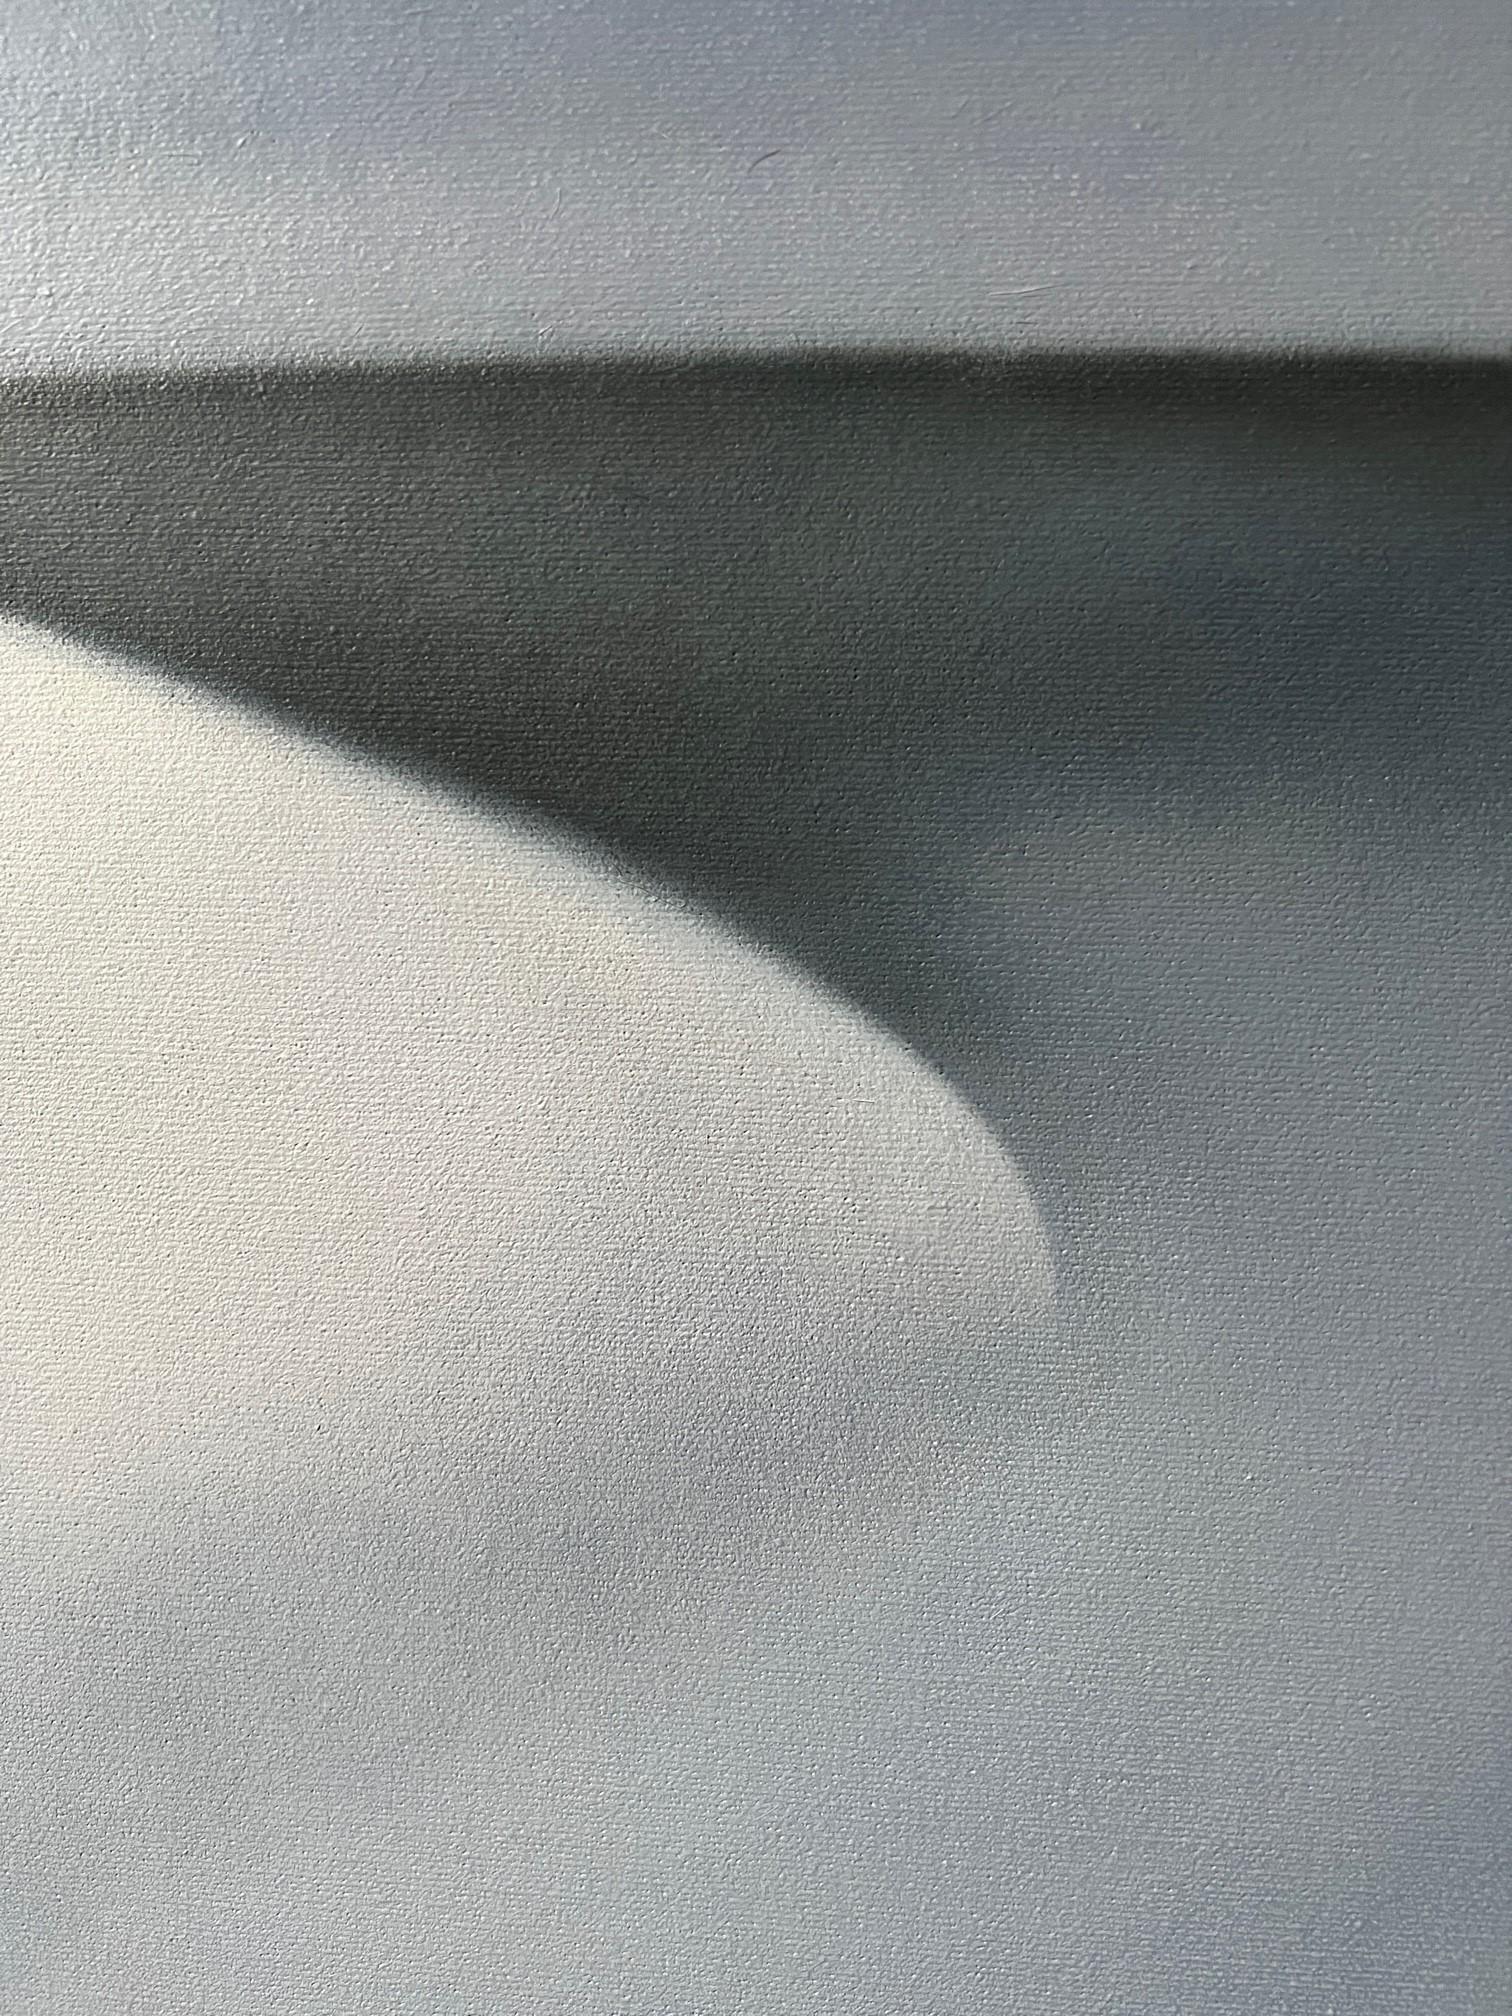 All Shades of Grey No 1  48 X 36 - Abstract Painting by Lalani Nan